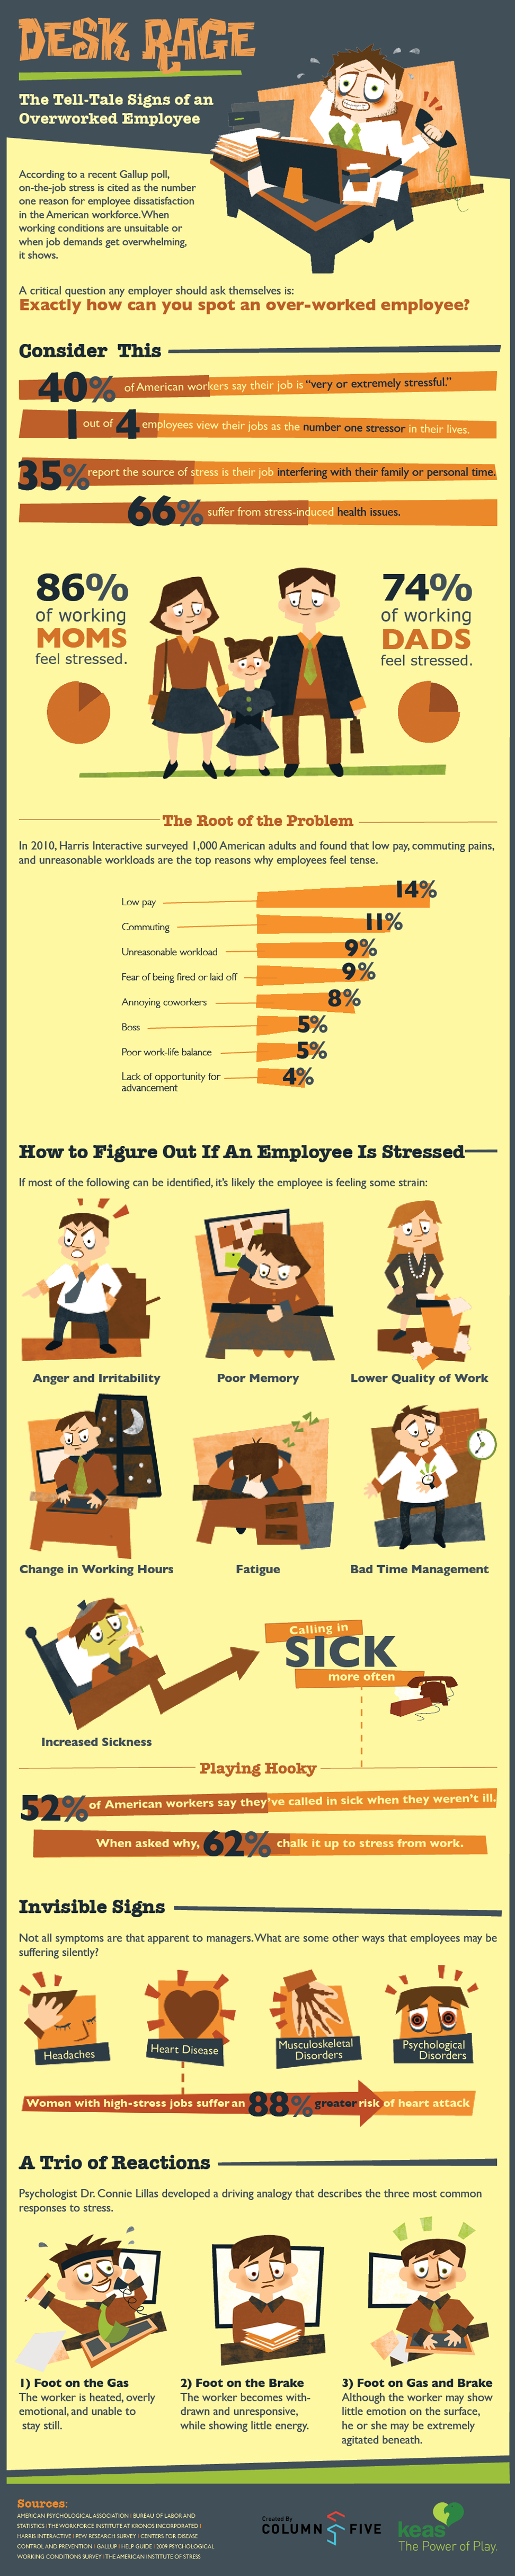 12.05.03 KEAS DeskRage 972px copy Signs of an Overworked Employee